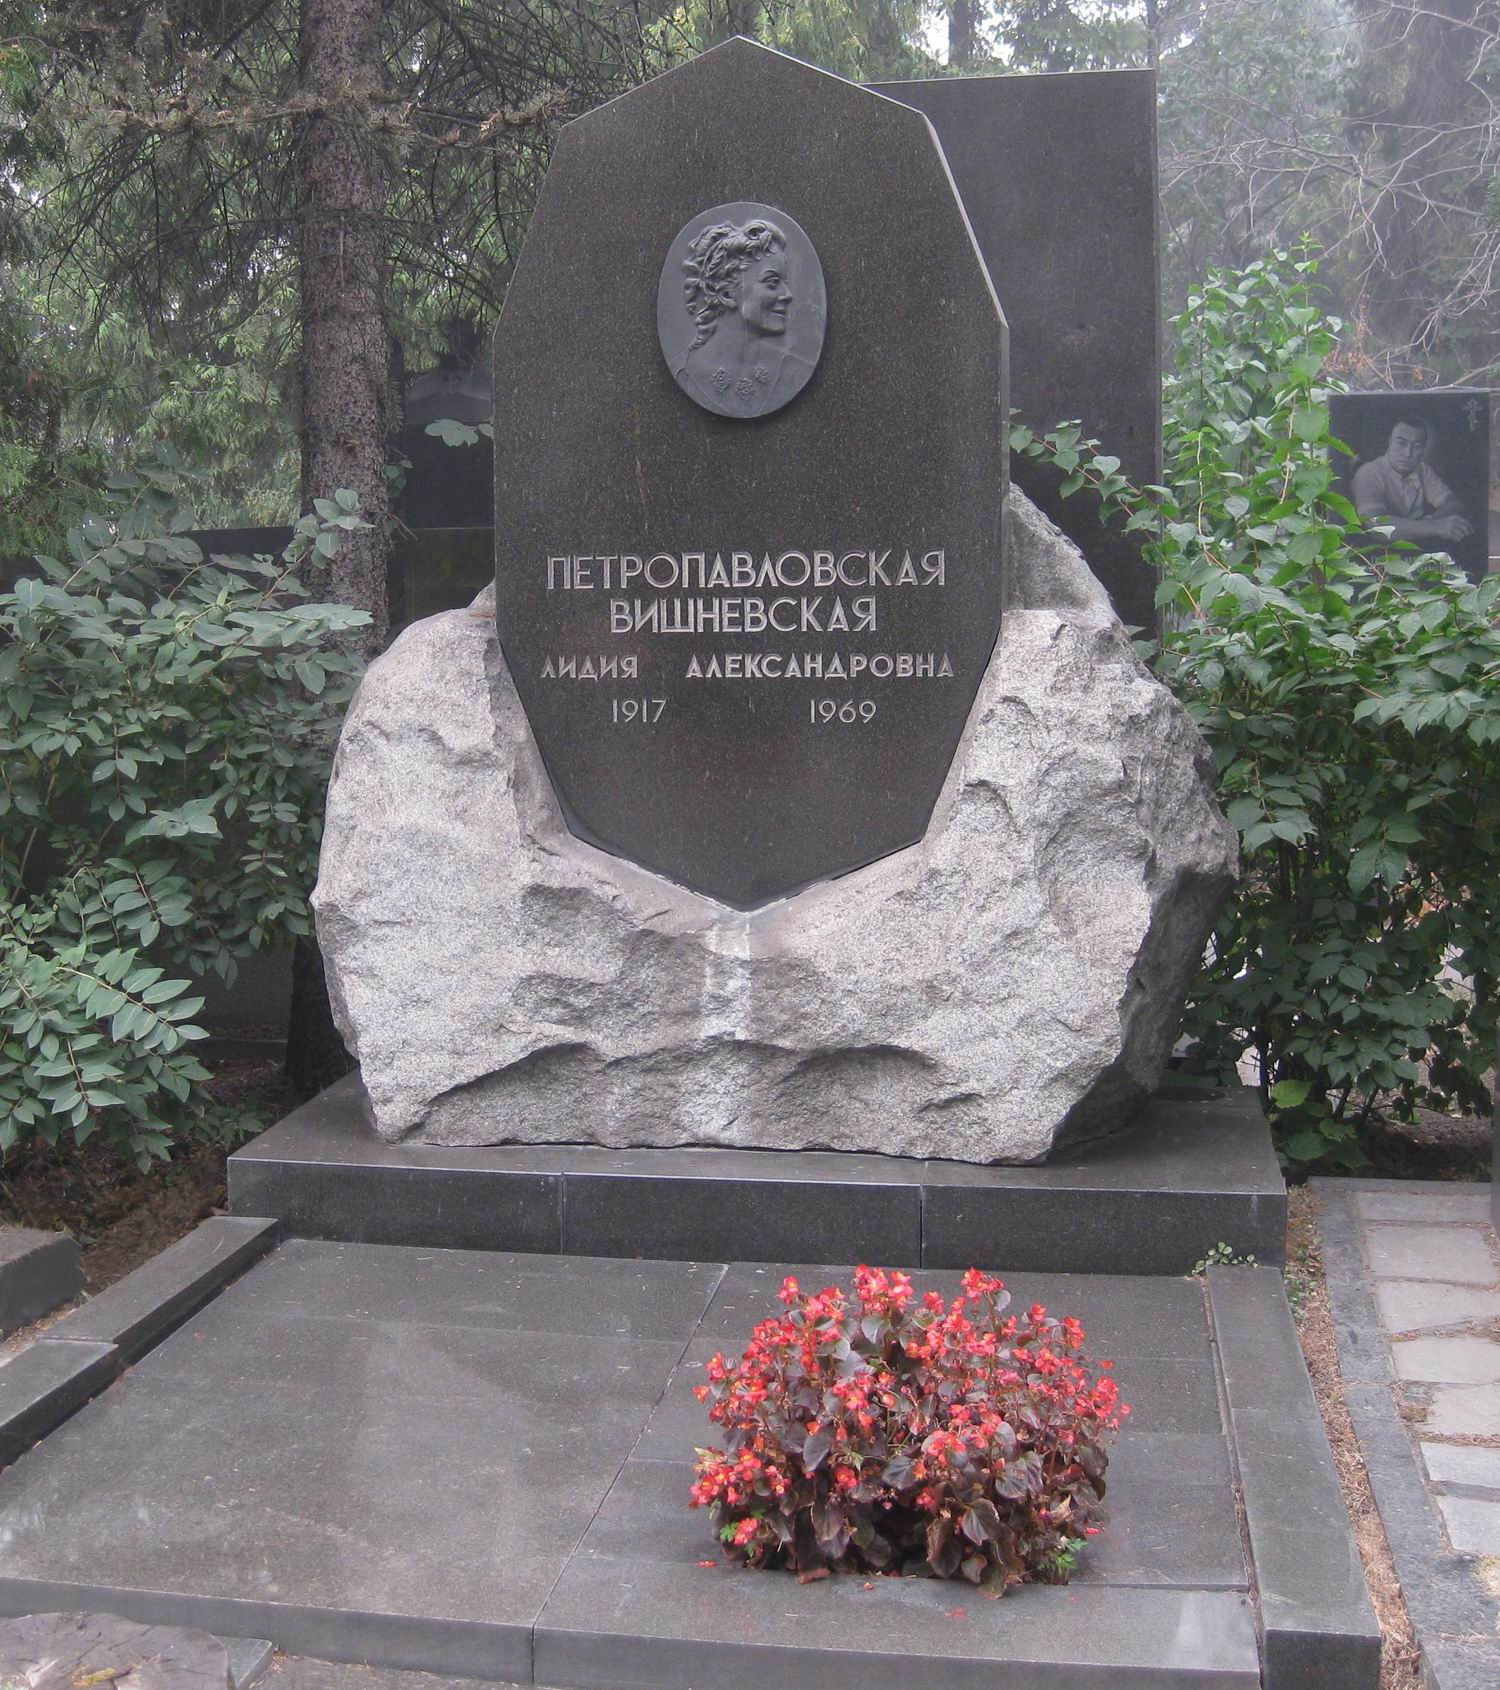 Памятник на могиле Петропавловской-Вишневской Л.А. (1917-1969), на Новодевичьем кладбище (7-1-16).